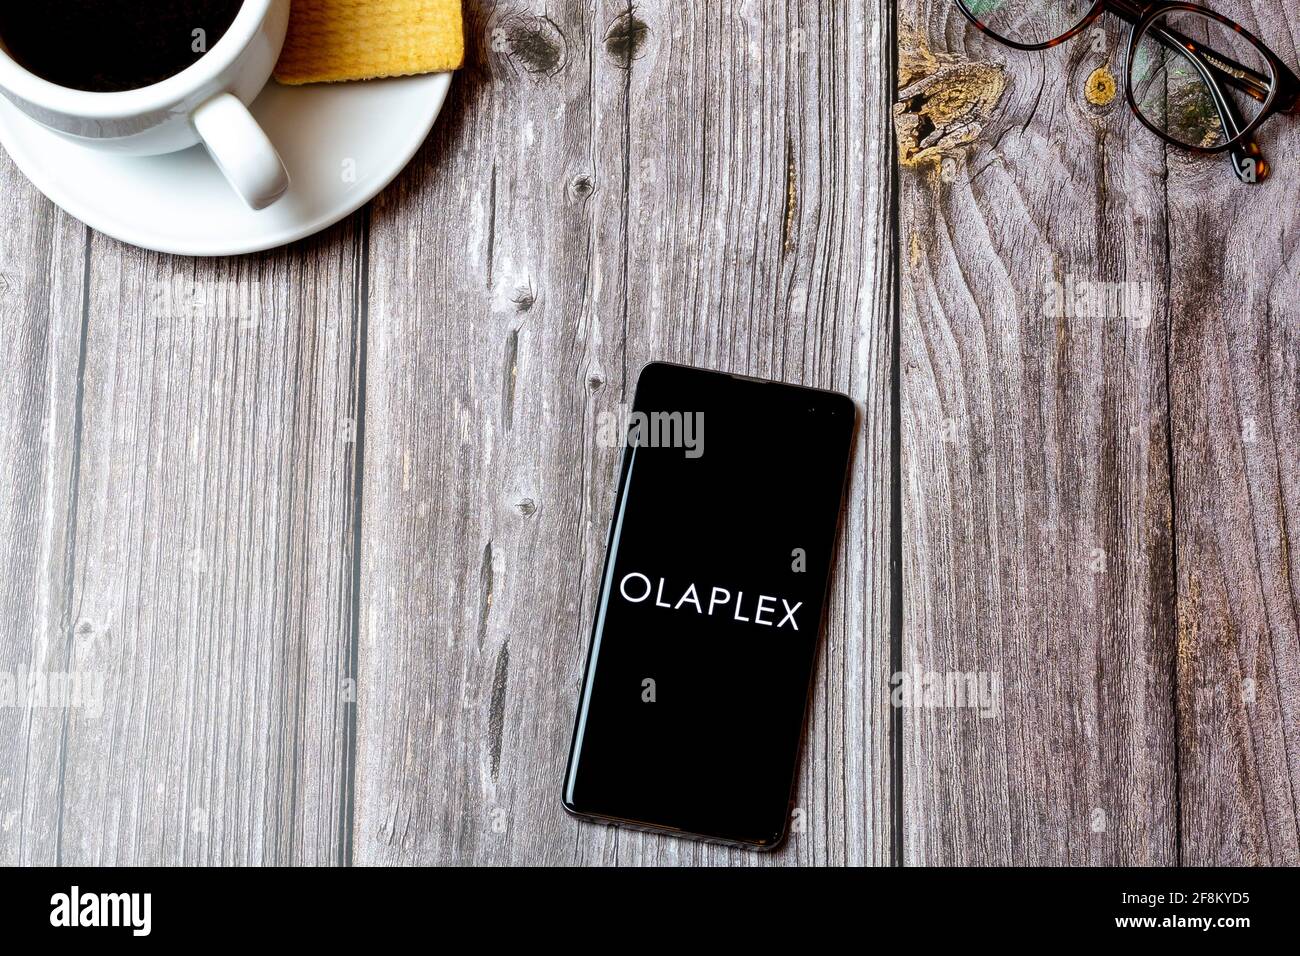 Olaplex mobile immagini e fotografie stock ad alta risoluzione - Alamy